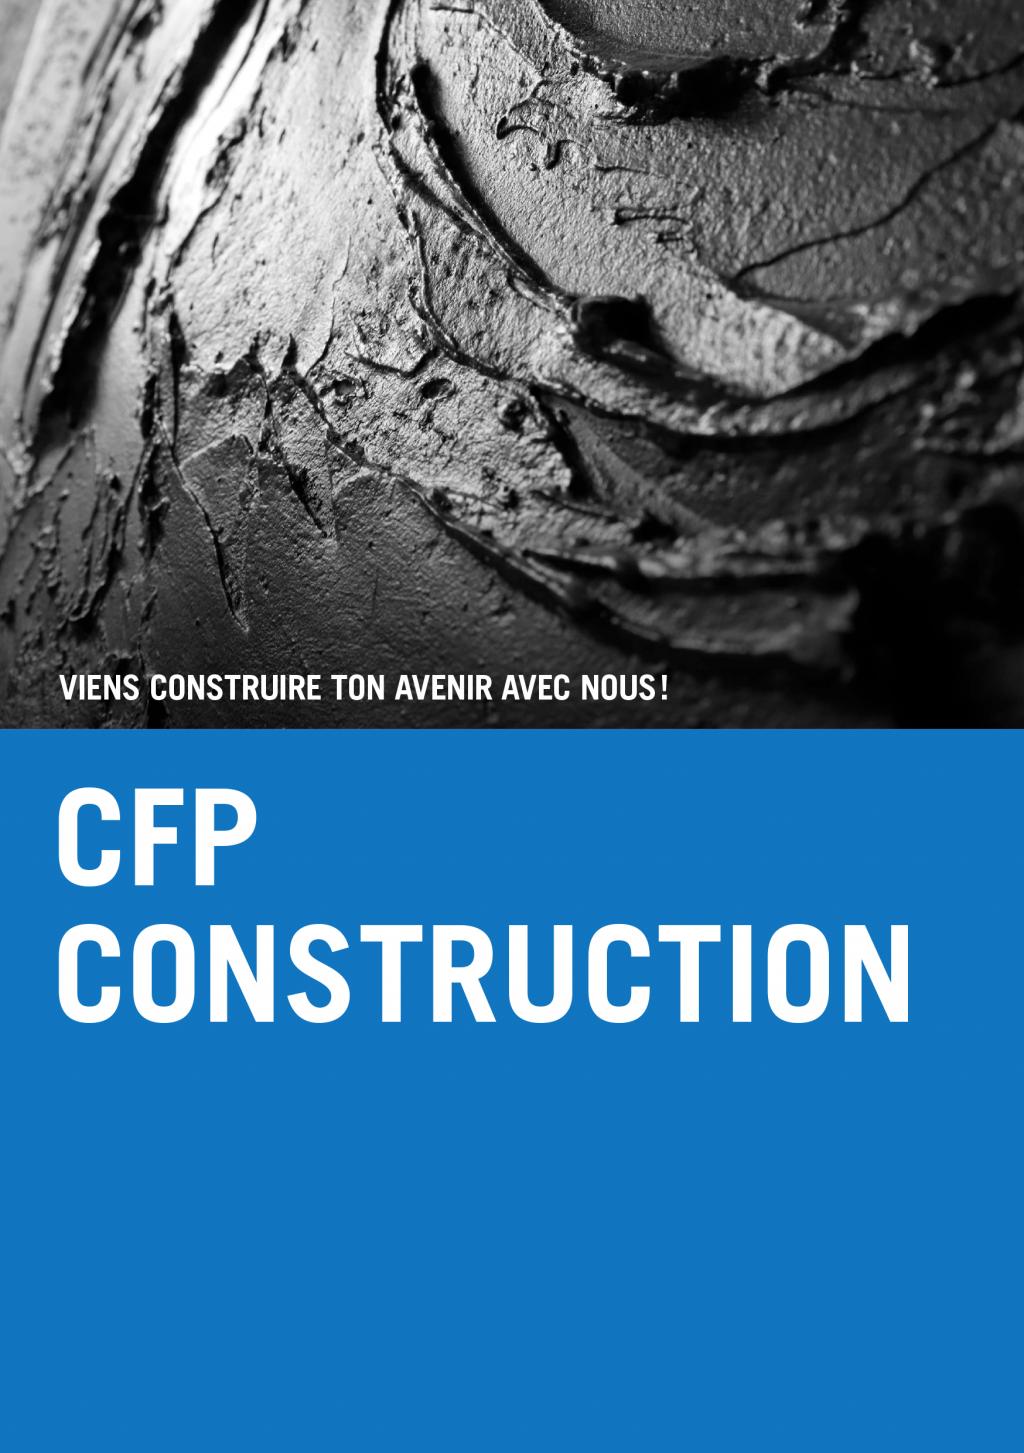 CFPC flyer